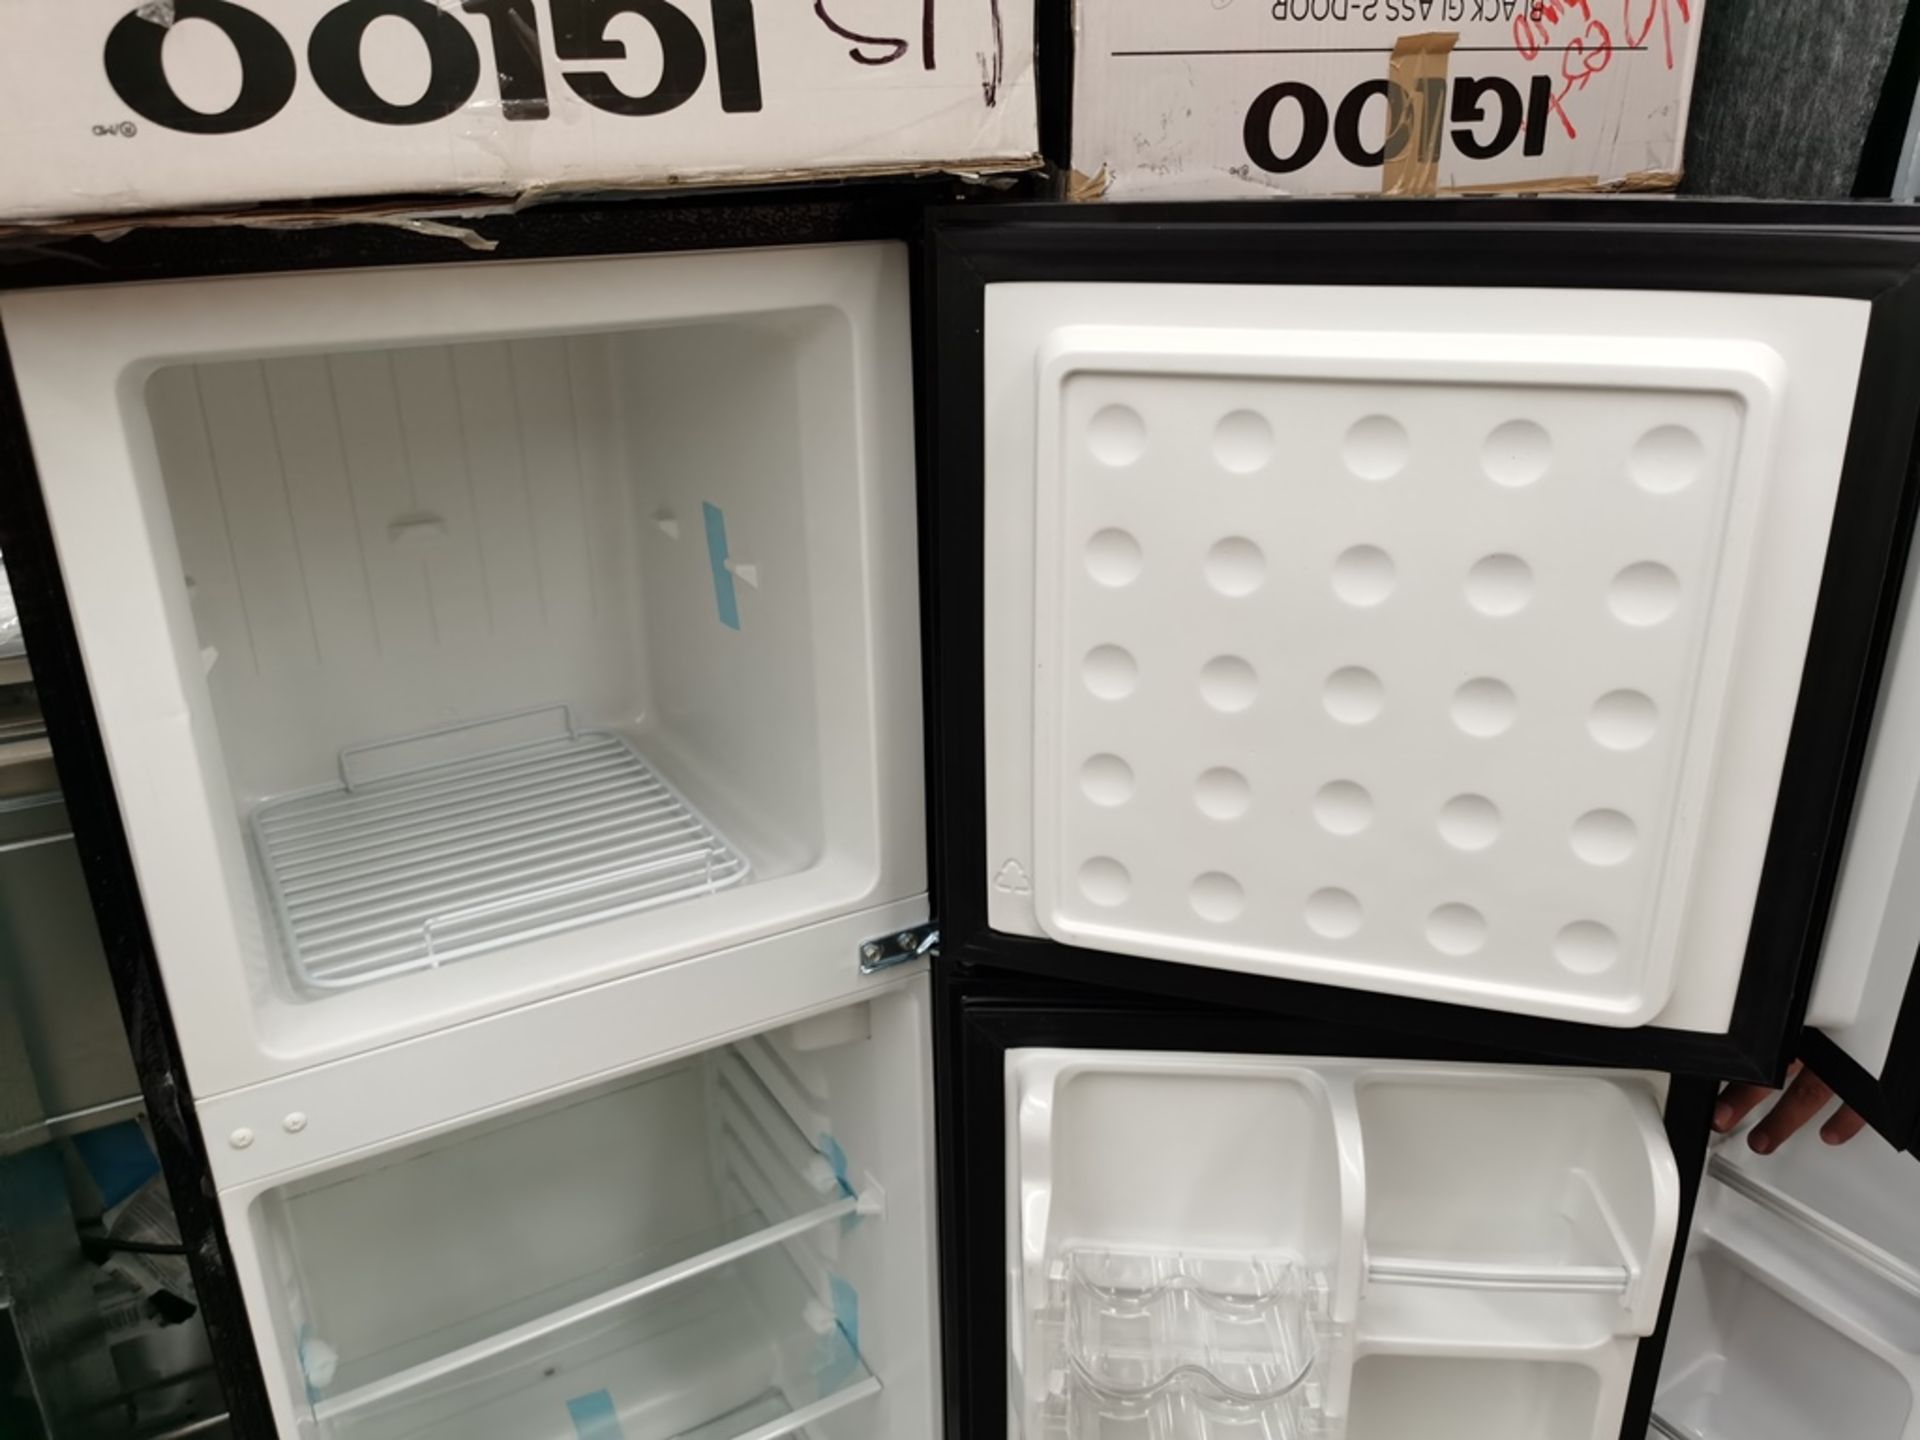 Lote de 2 Refrigeradores contiene: 1 Refrigerador Marca Igloo, Modelo IRF47DDGLSBK, Serie N/D, - Image 9 of 11